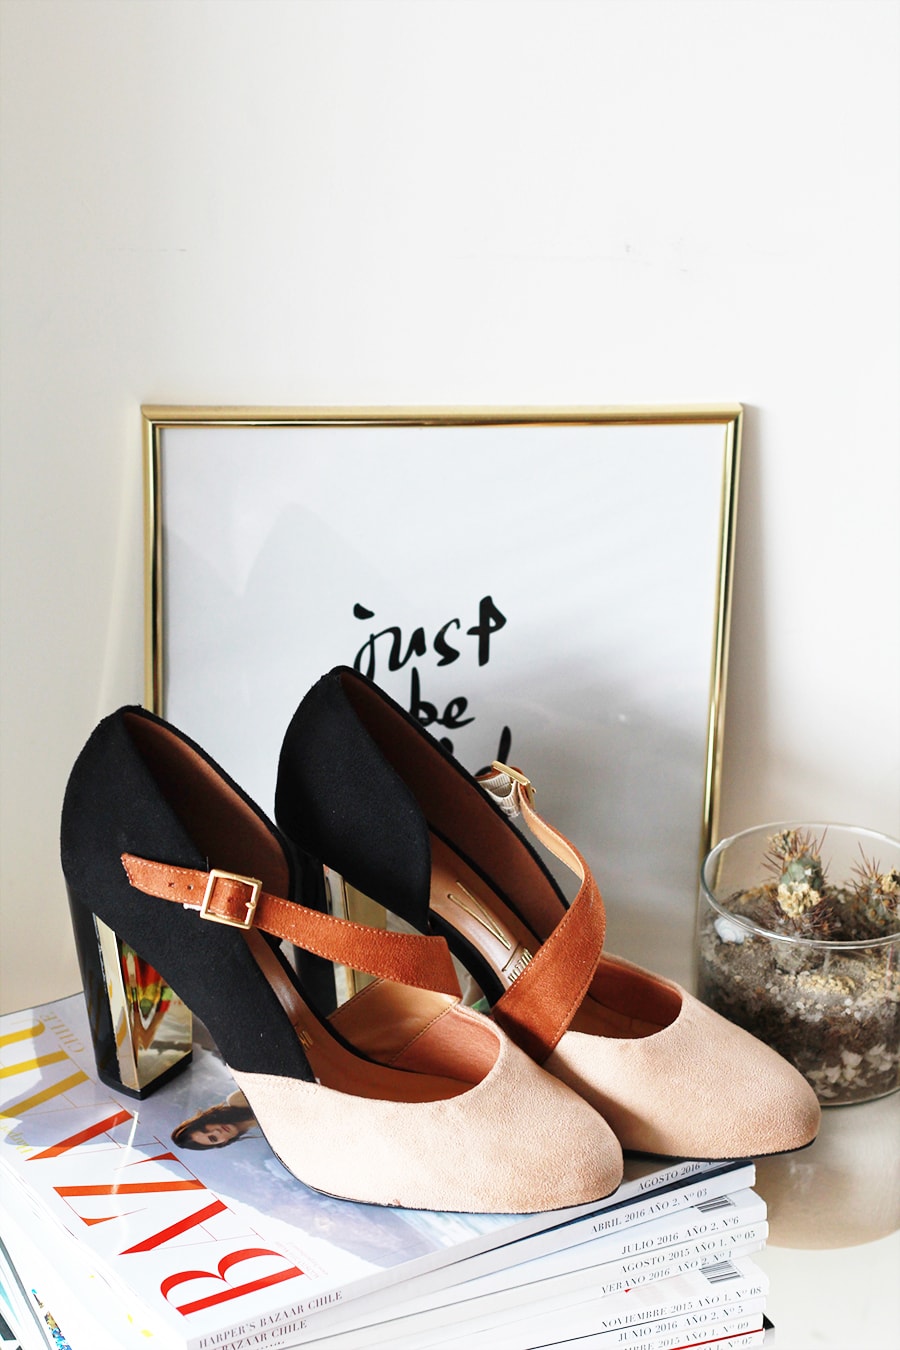 Midseason clothing HAUL - high heels - Vizzano | Golden Strokes